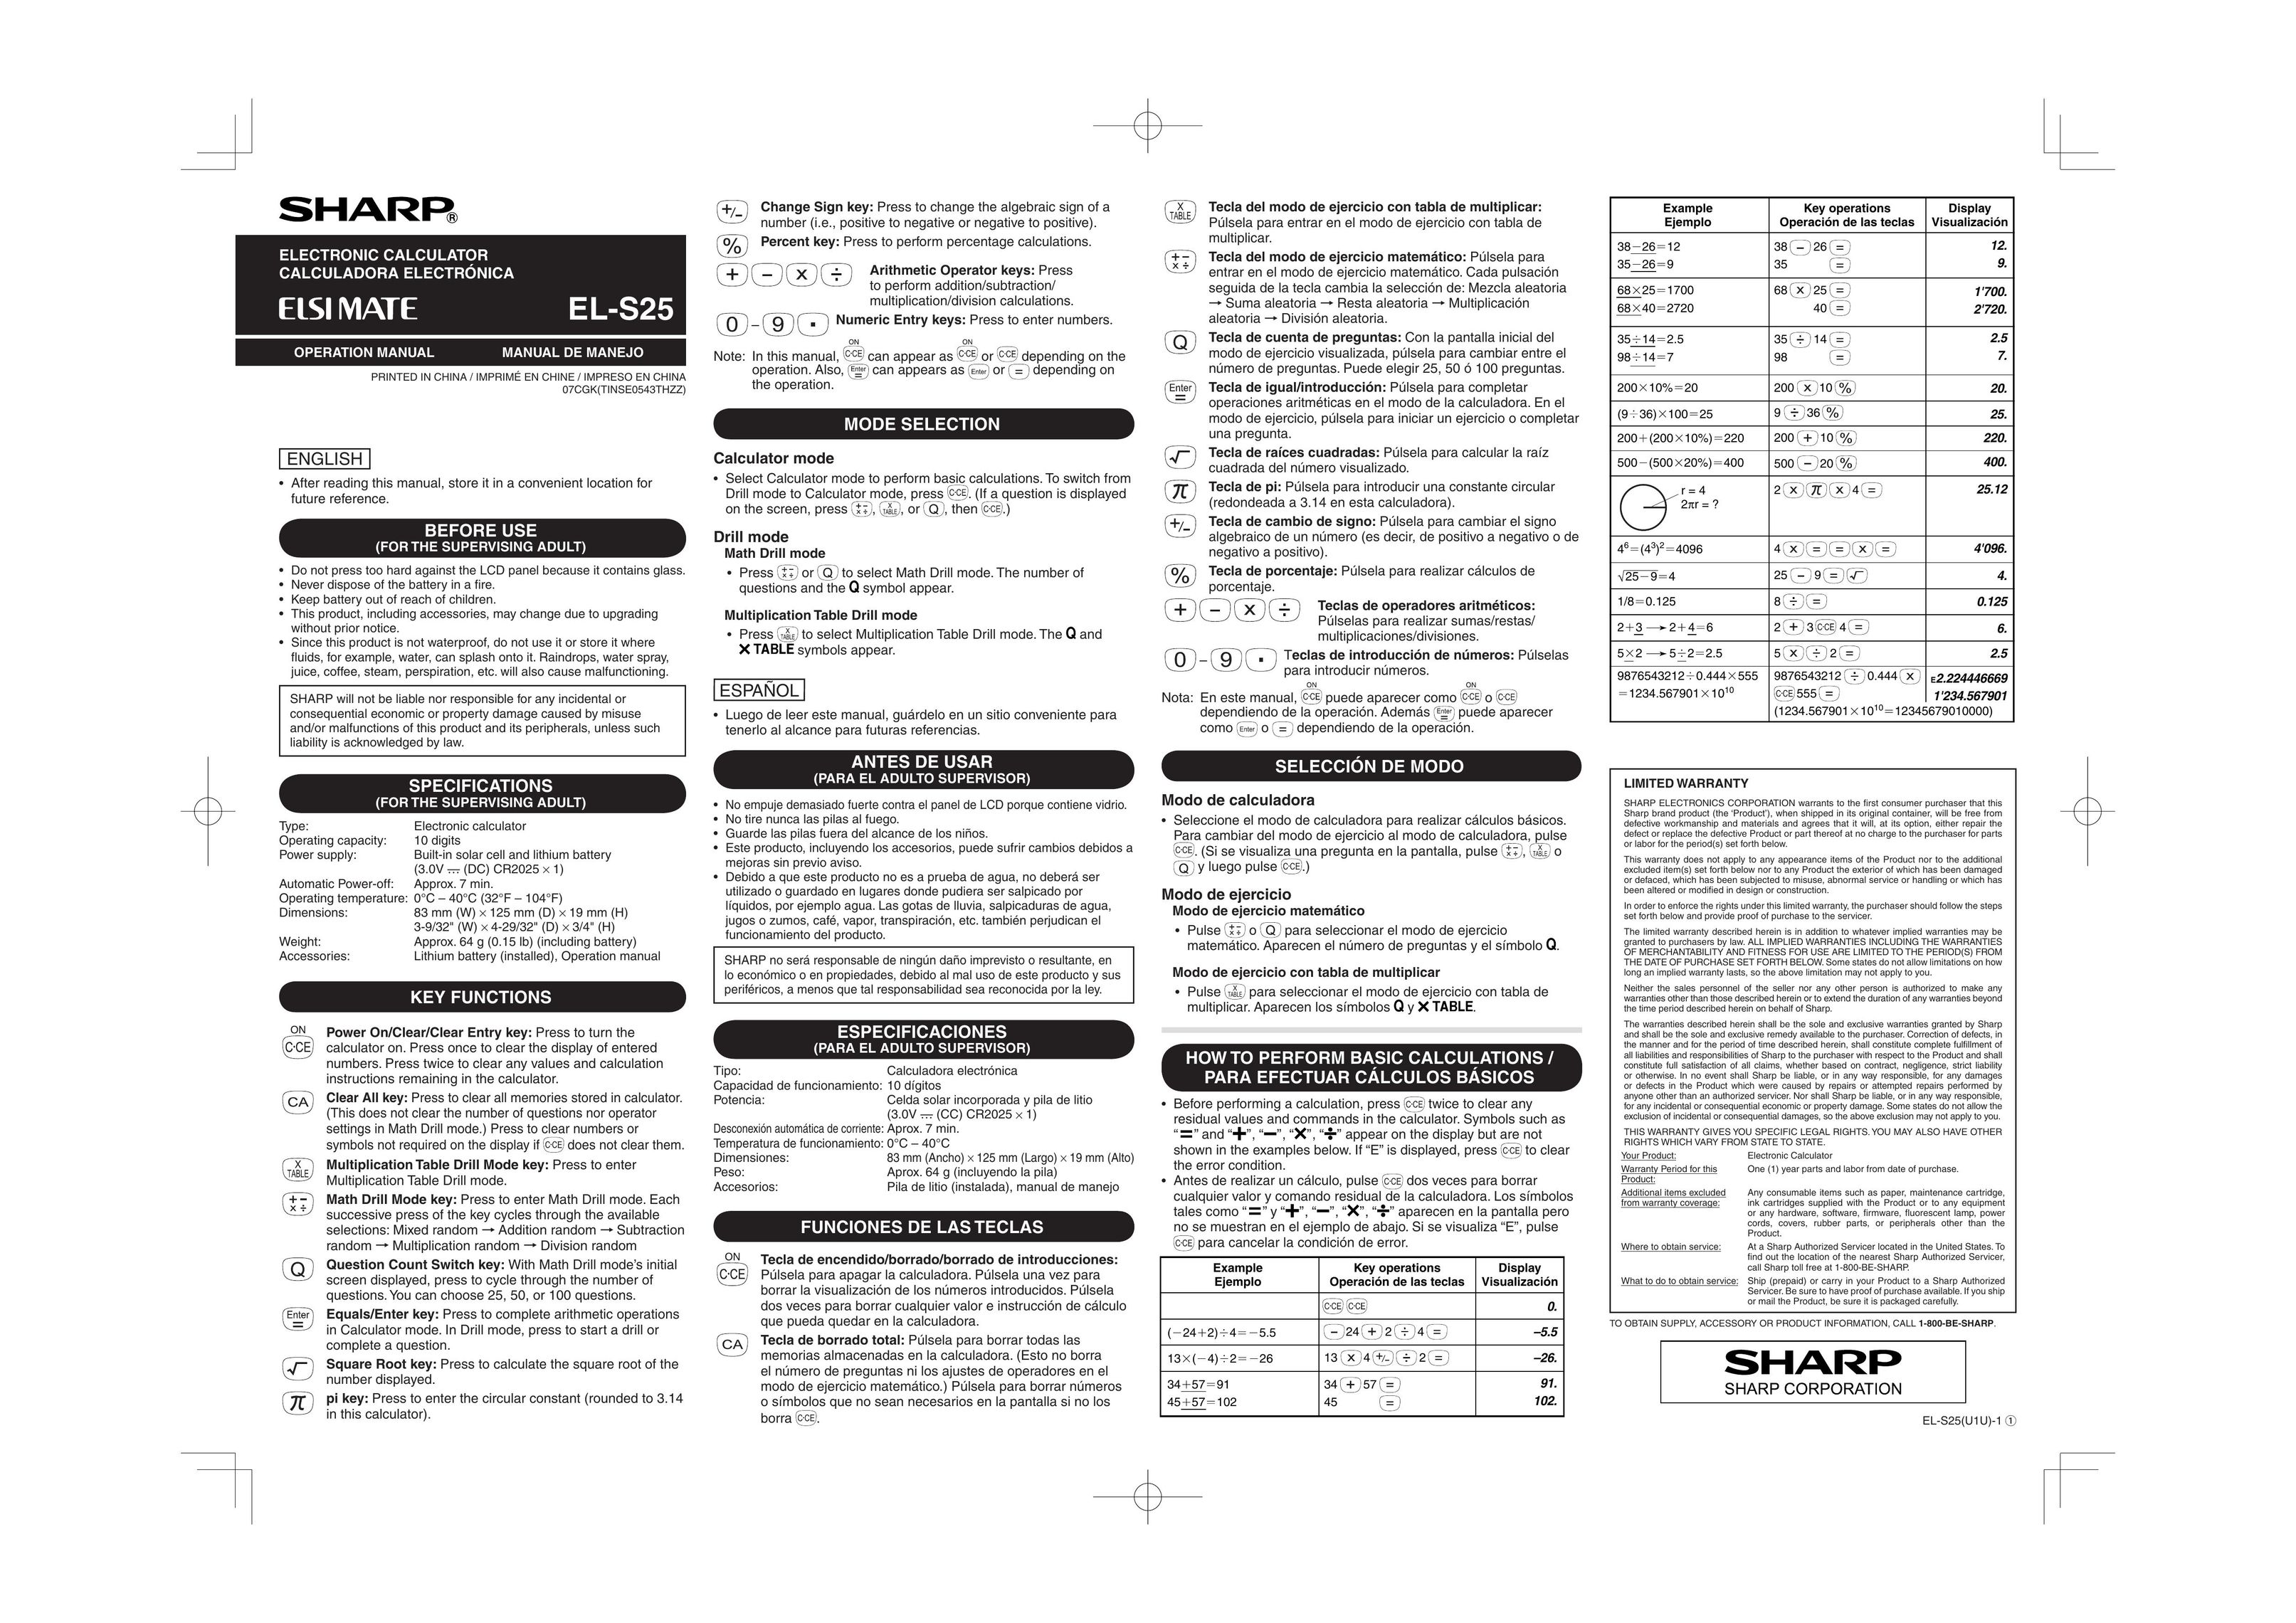 Sony EL-S25 Calculator User Manual